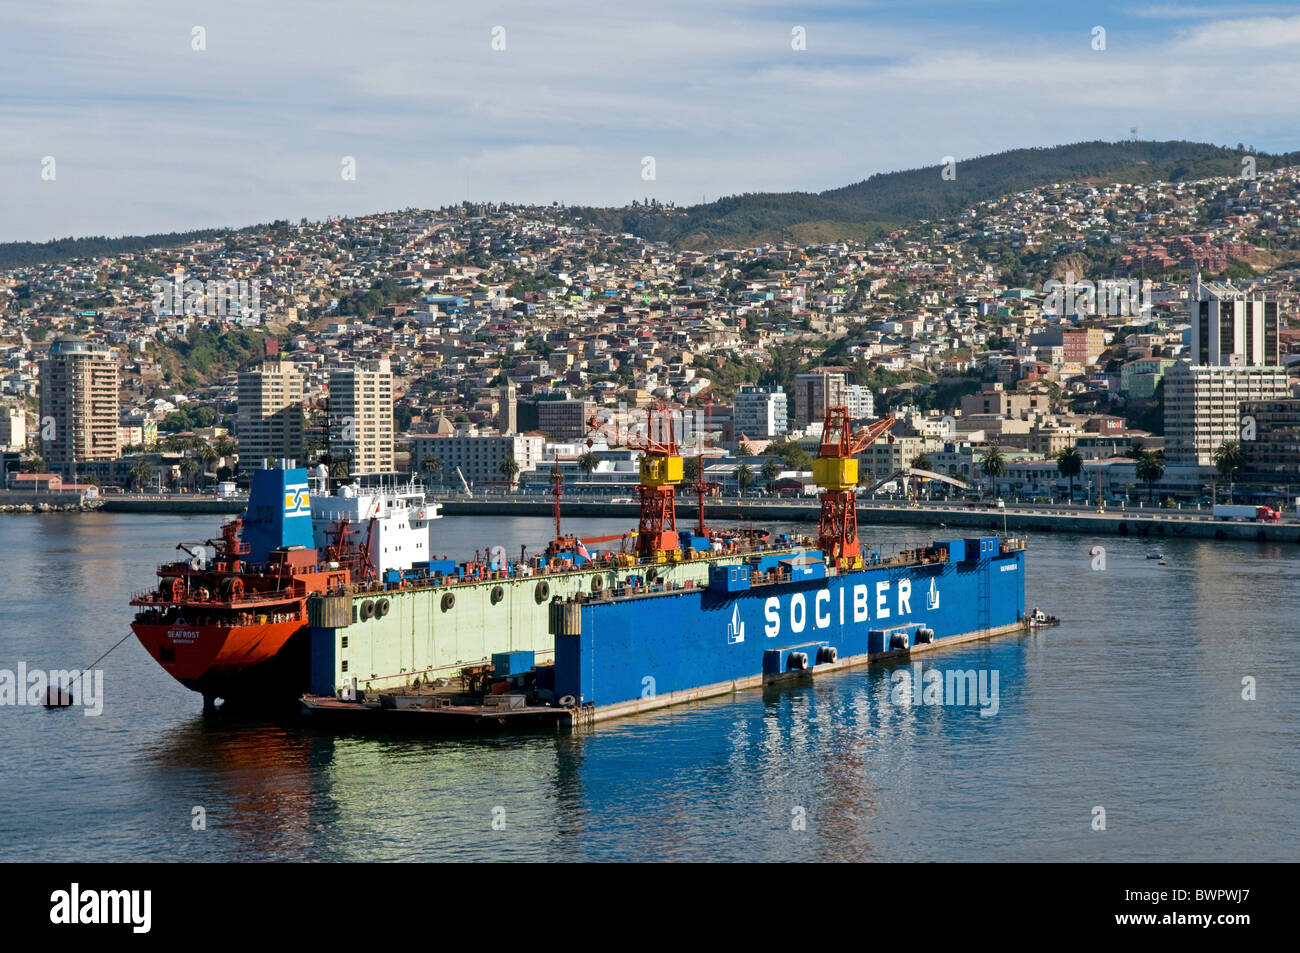 Chili Amérique du Sud Valparaiso en cale sèche flottante du port le port très animé aujourd'hui une ville au patrimoine mondial de l'UNESCO Banque D'Images